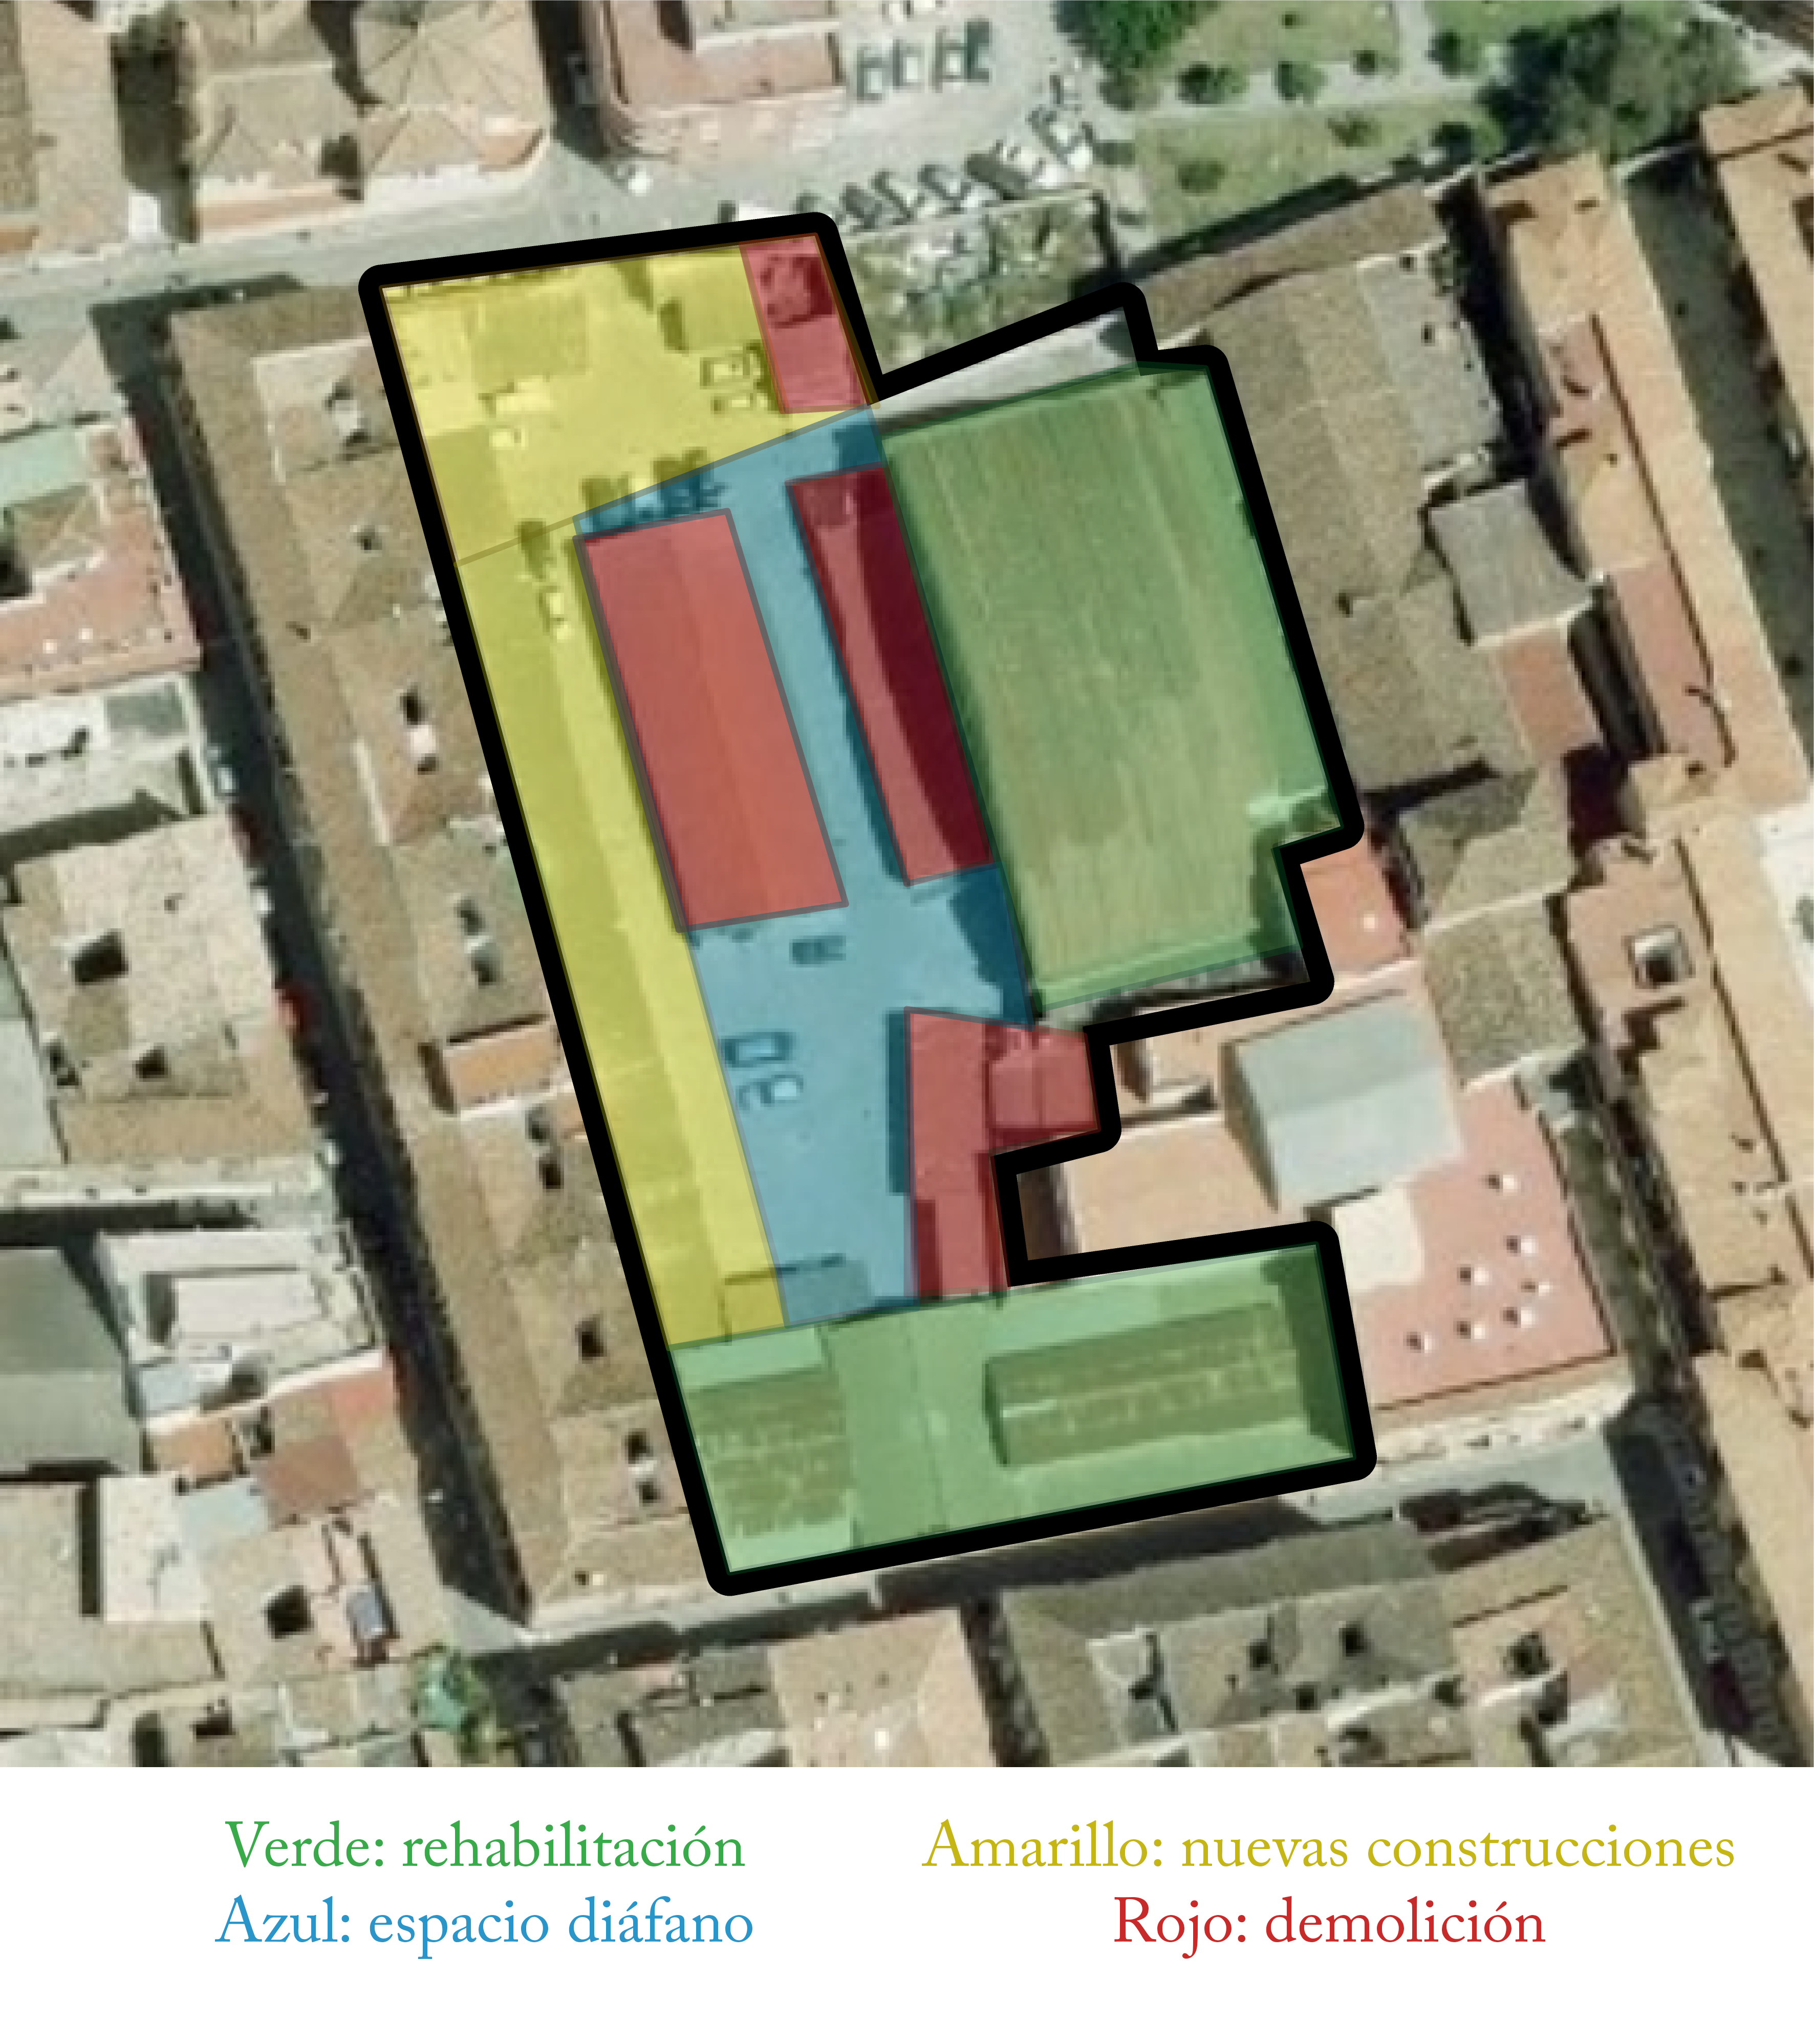 Garaje Las Delicias, propuesta de intervenciones, 2021.